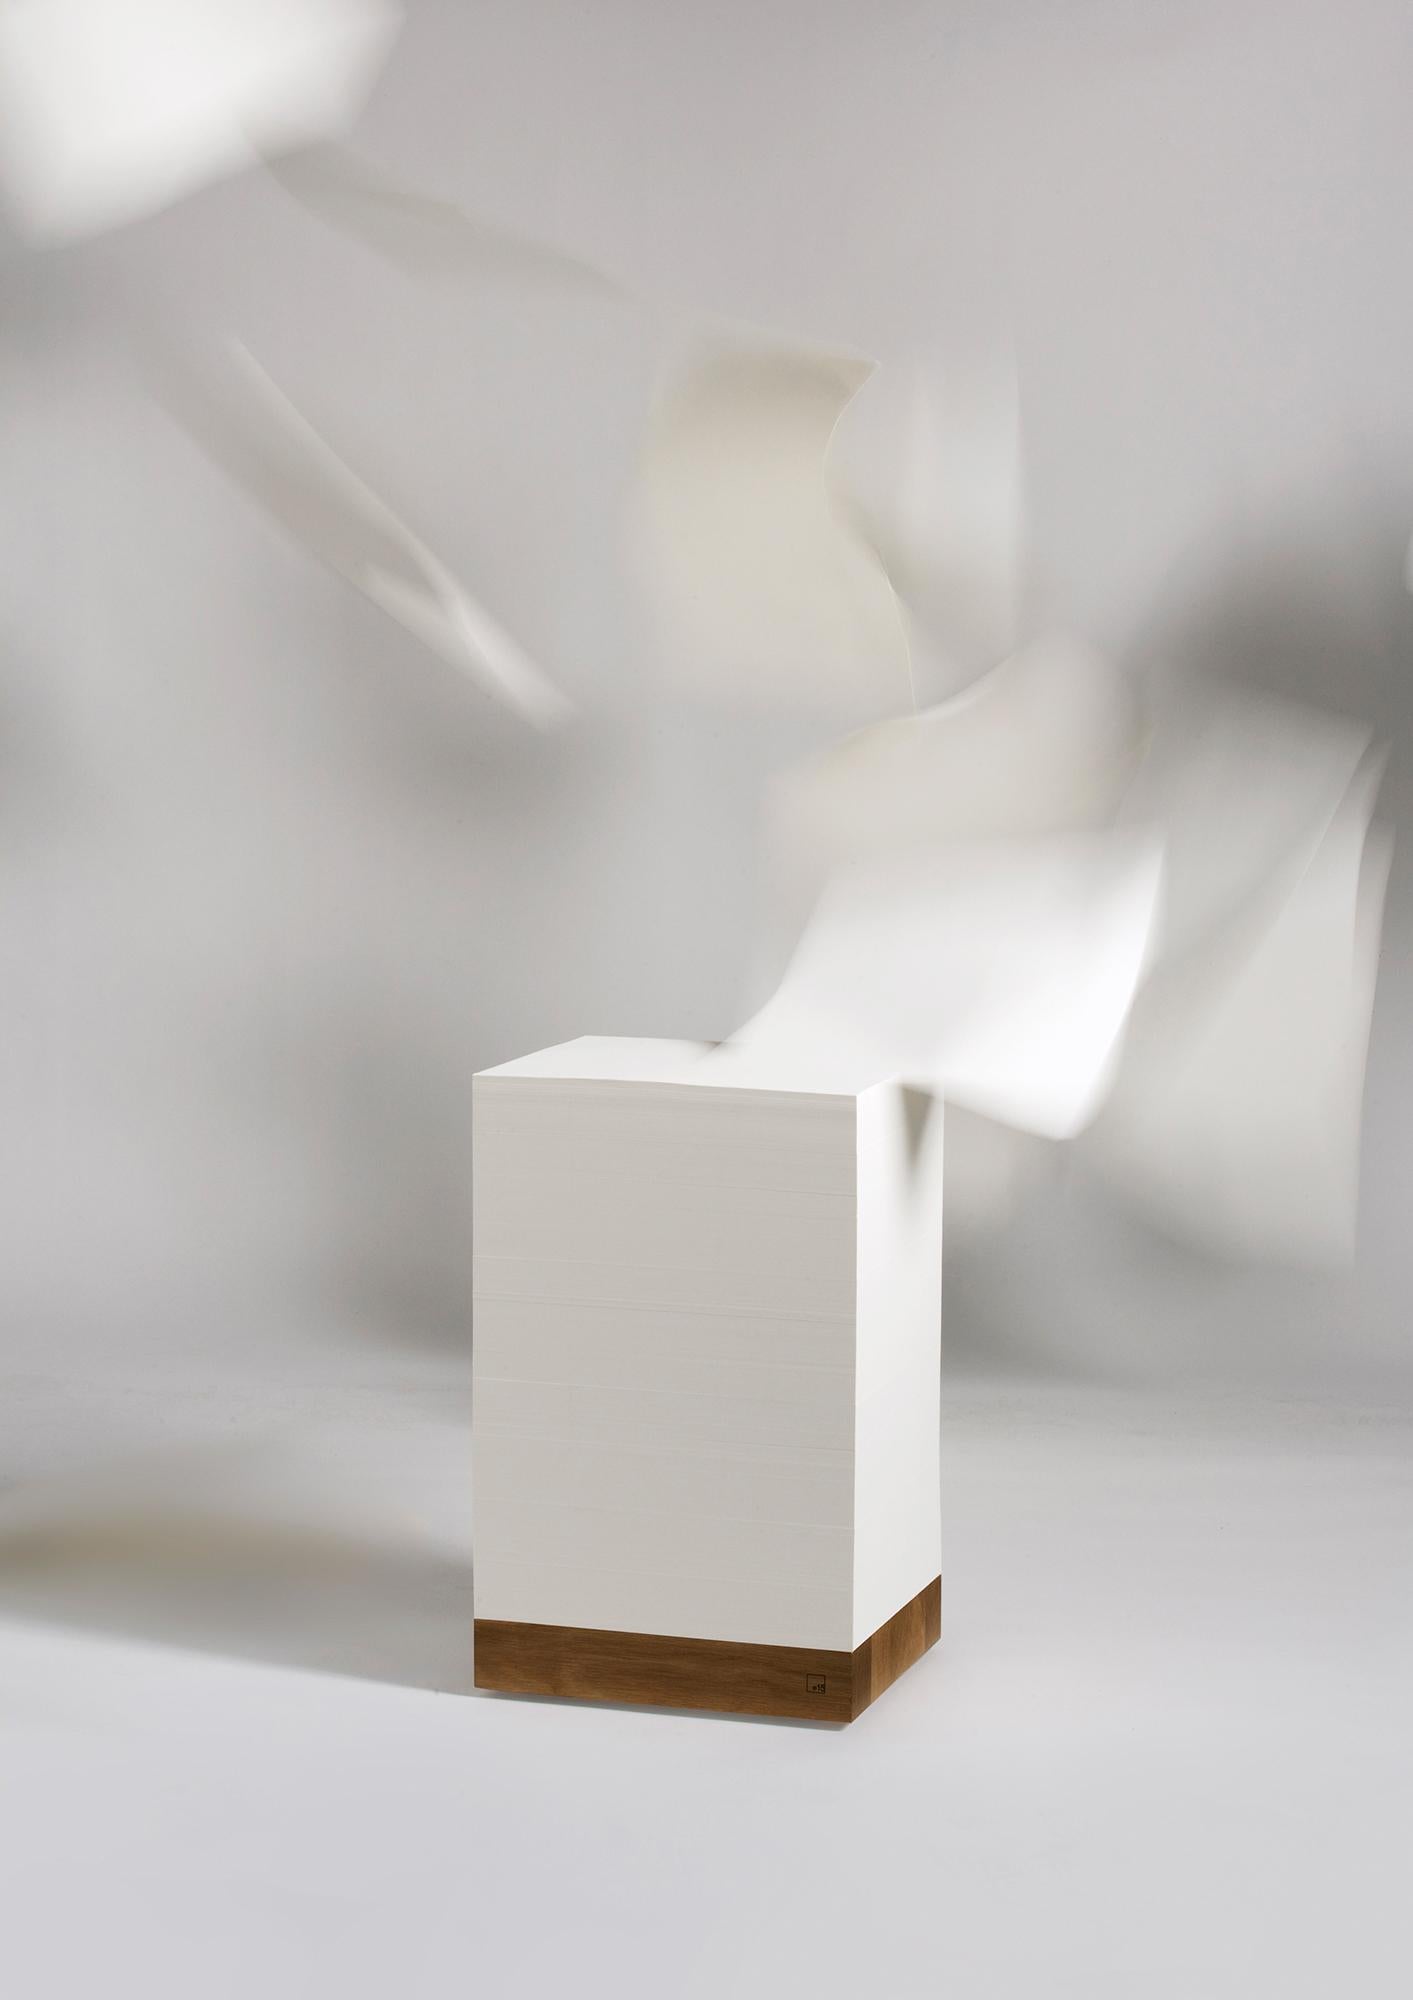 Le cube Munken est à la fois une sculpture, un outil de travail et une source d'inspiration. La forme, à la fois pure et flexible, se compose d'une pile monumentale de papier Munken et d'un socle en chêne massif. À partir d'une base en chêne massif